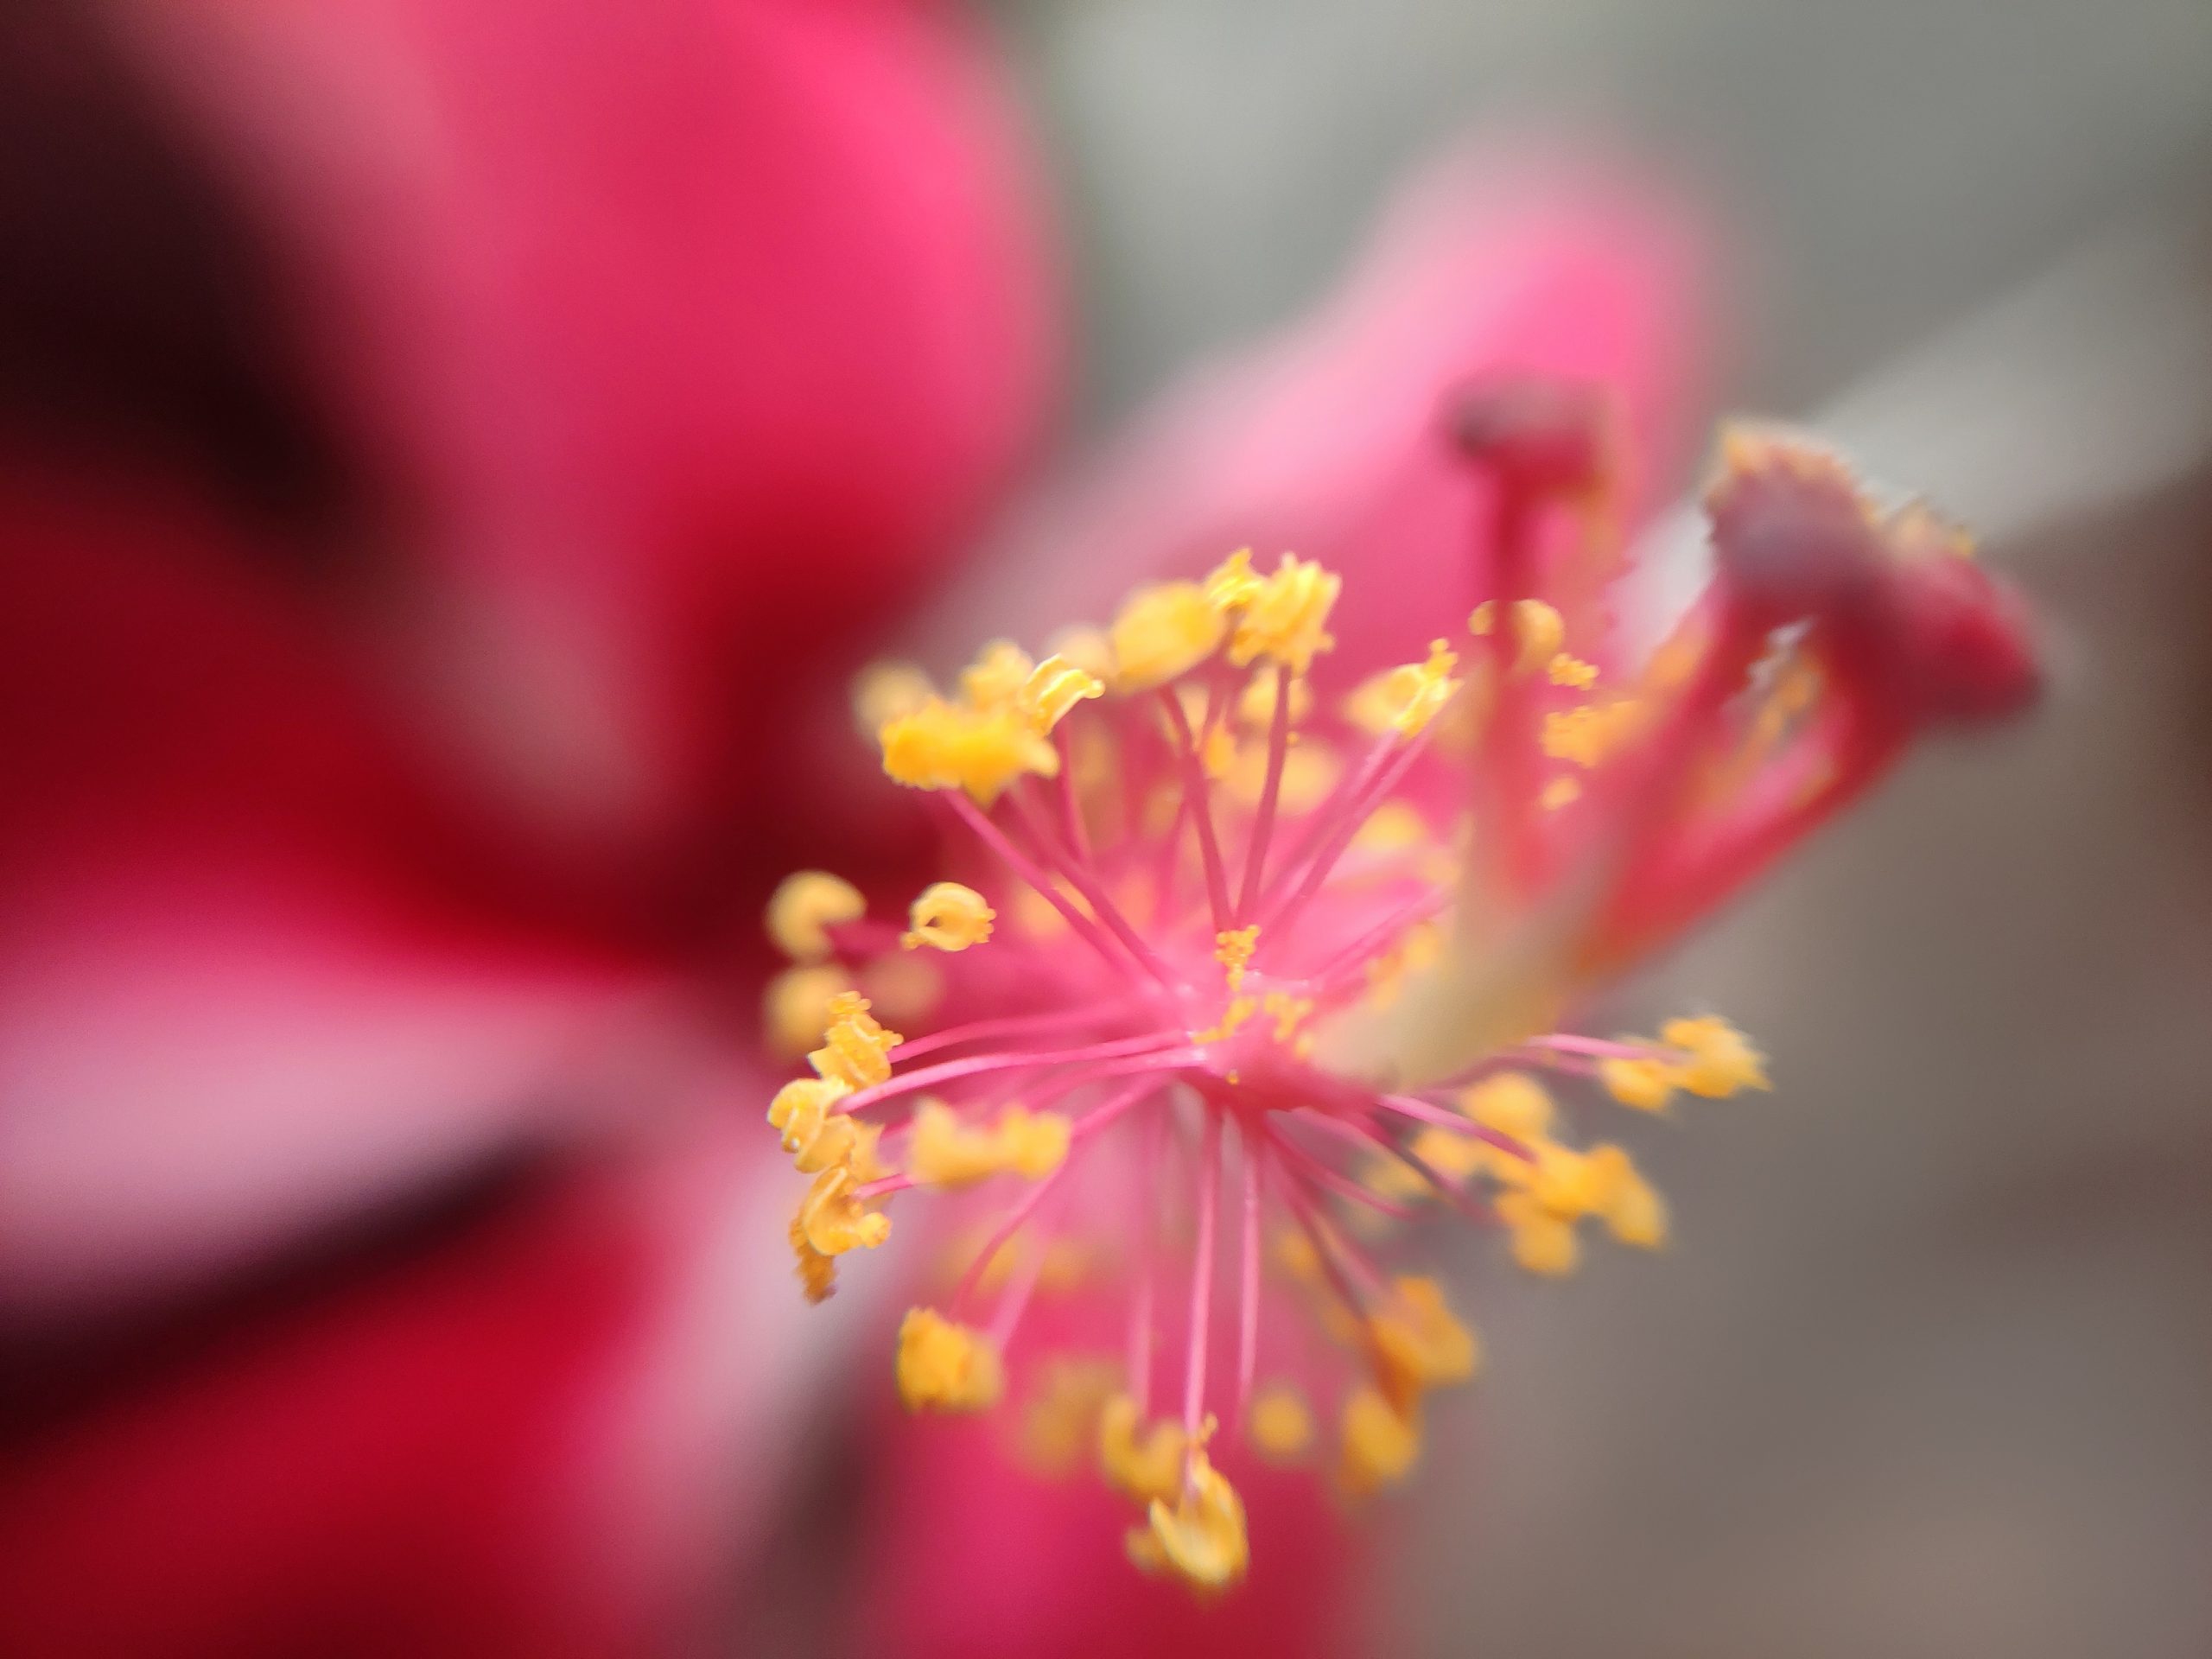 Pistil of Hibiscus flower